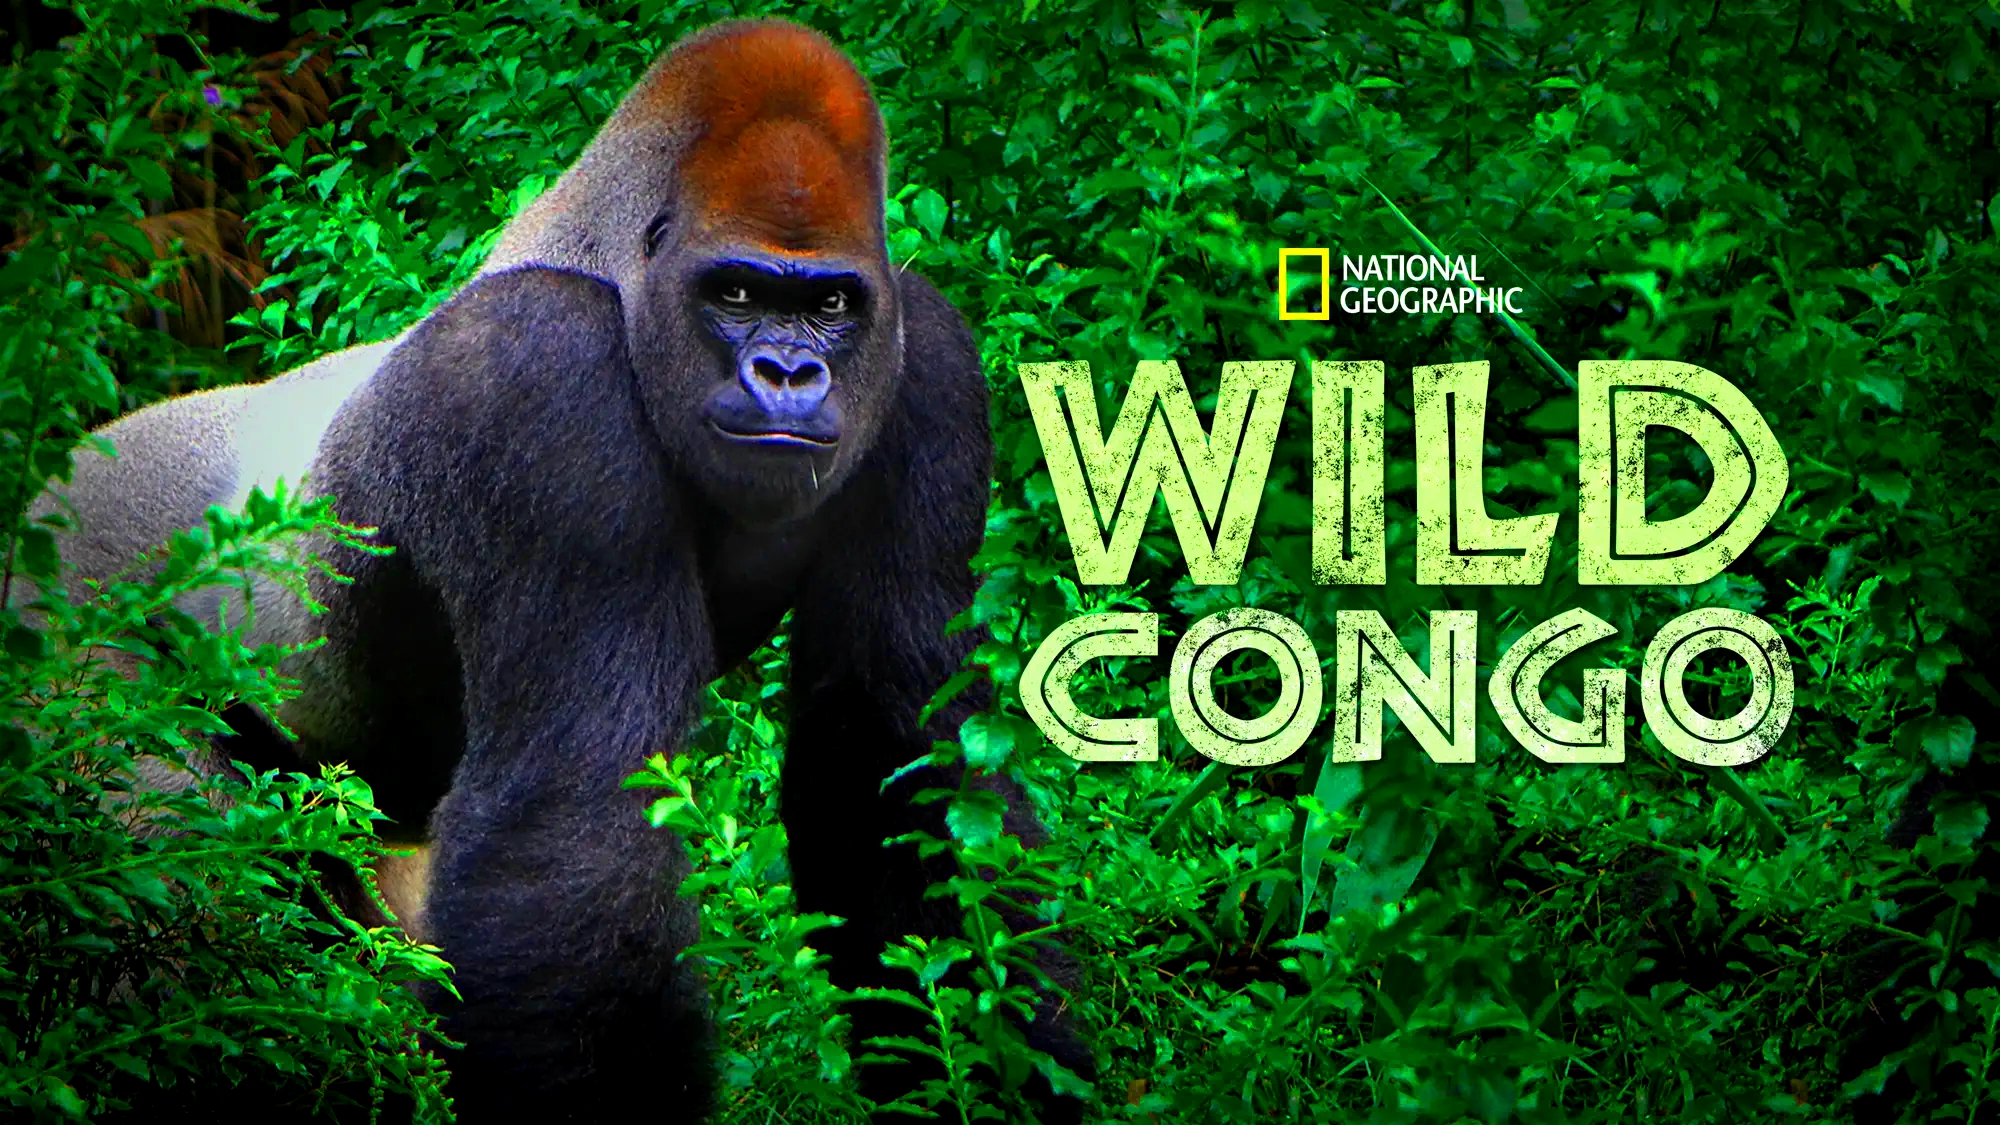 De Wilde Congo Rivier Part 01 02 NLSUBBED 1080p WEB-DL DD5 1 H 264-NTb-DDF